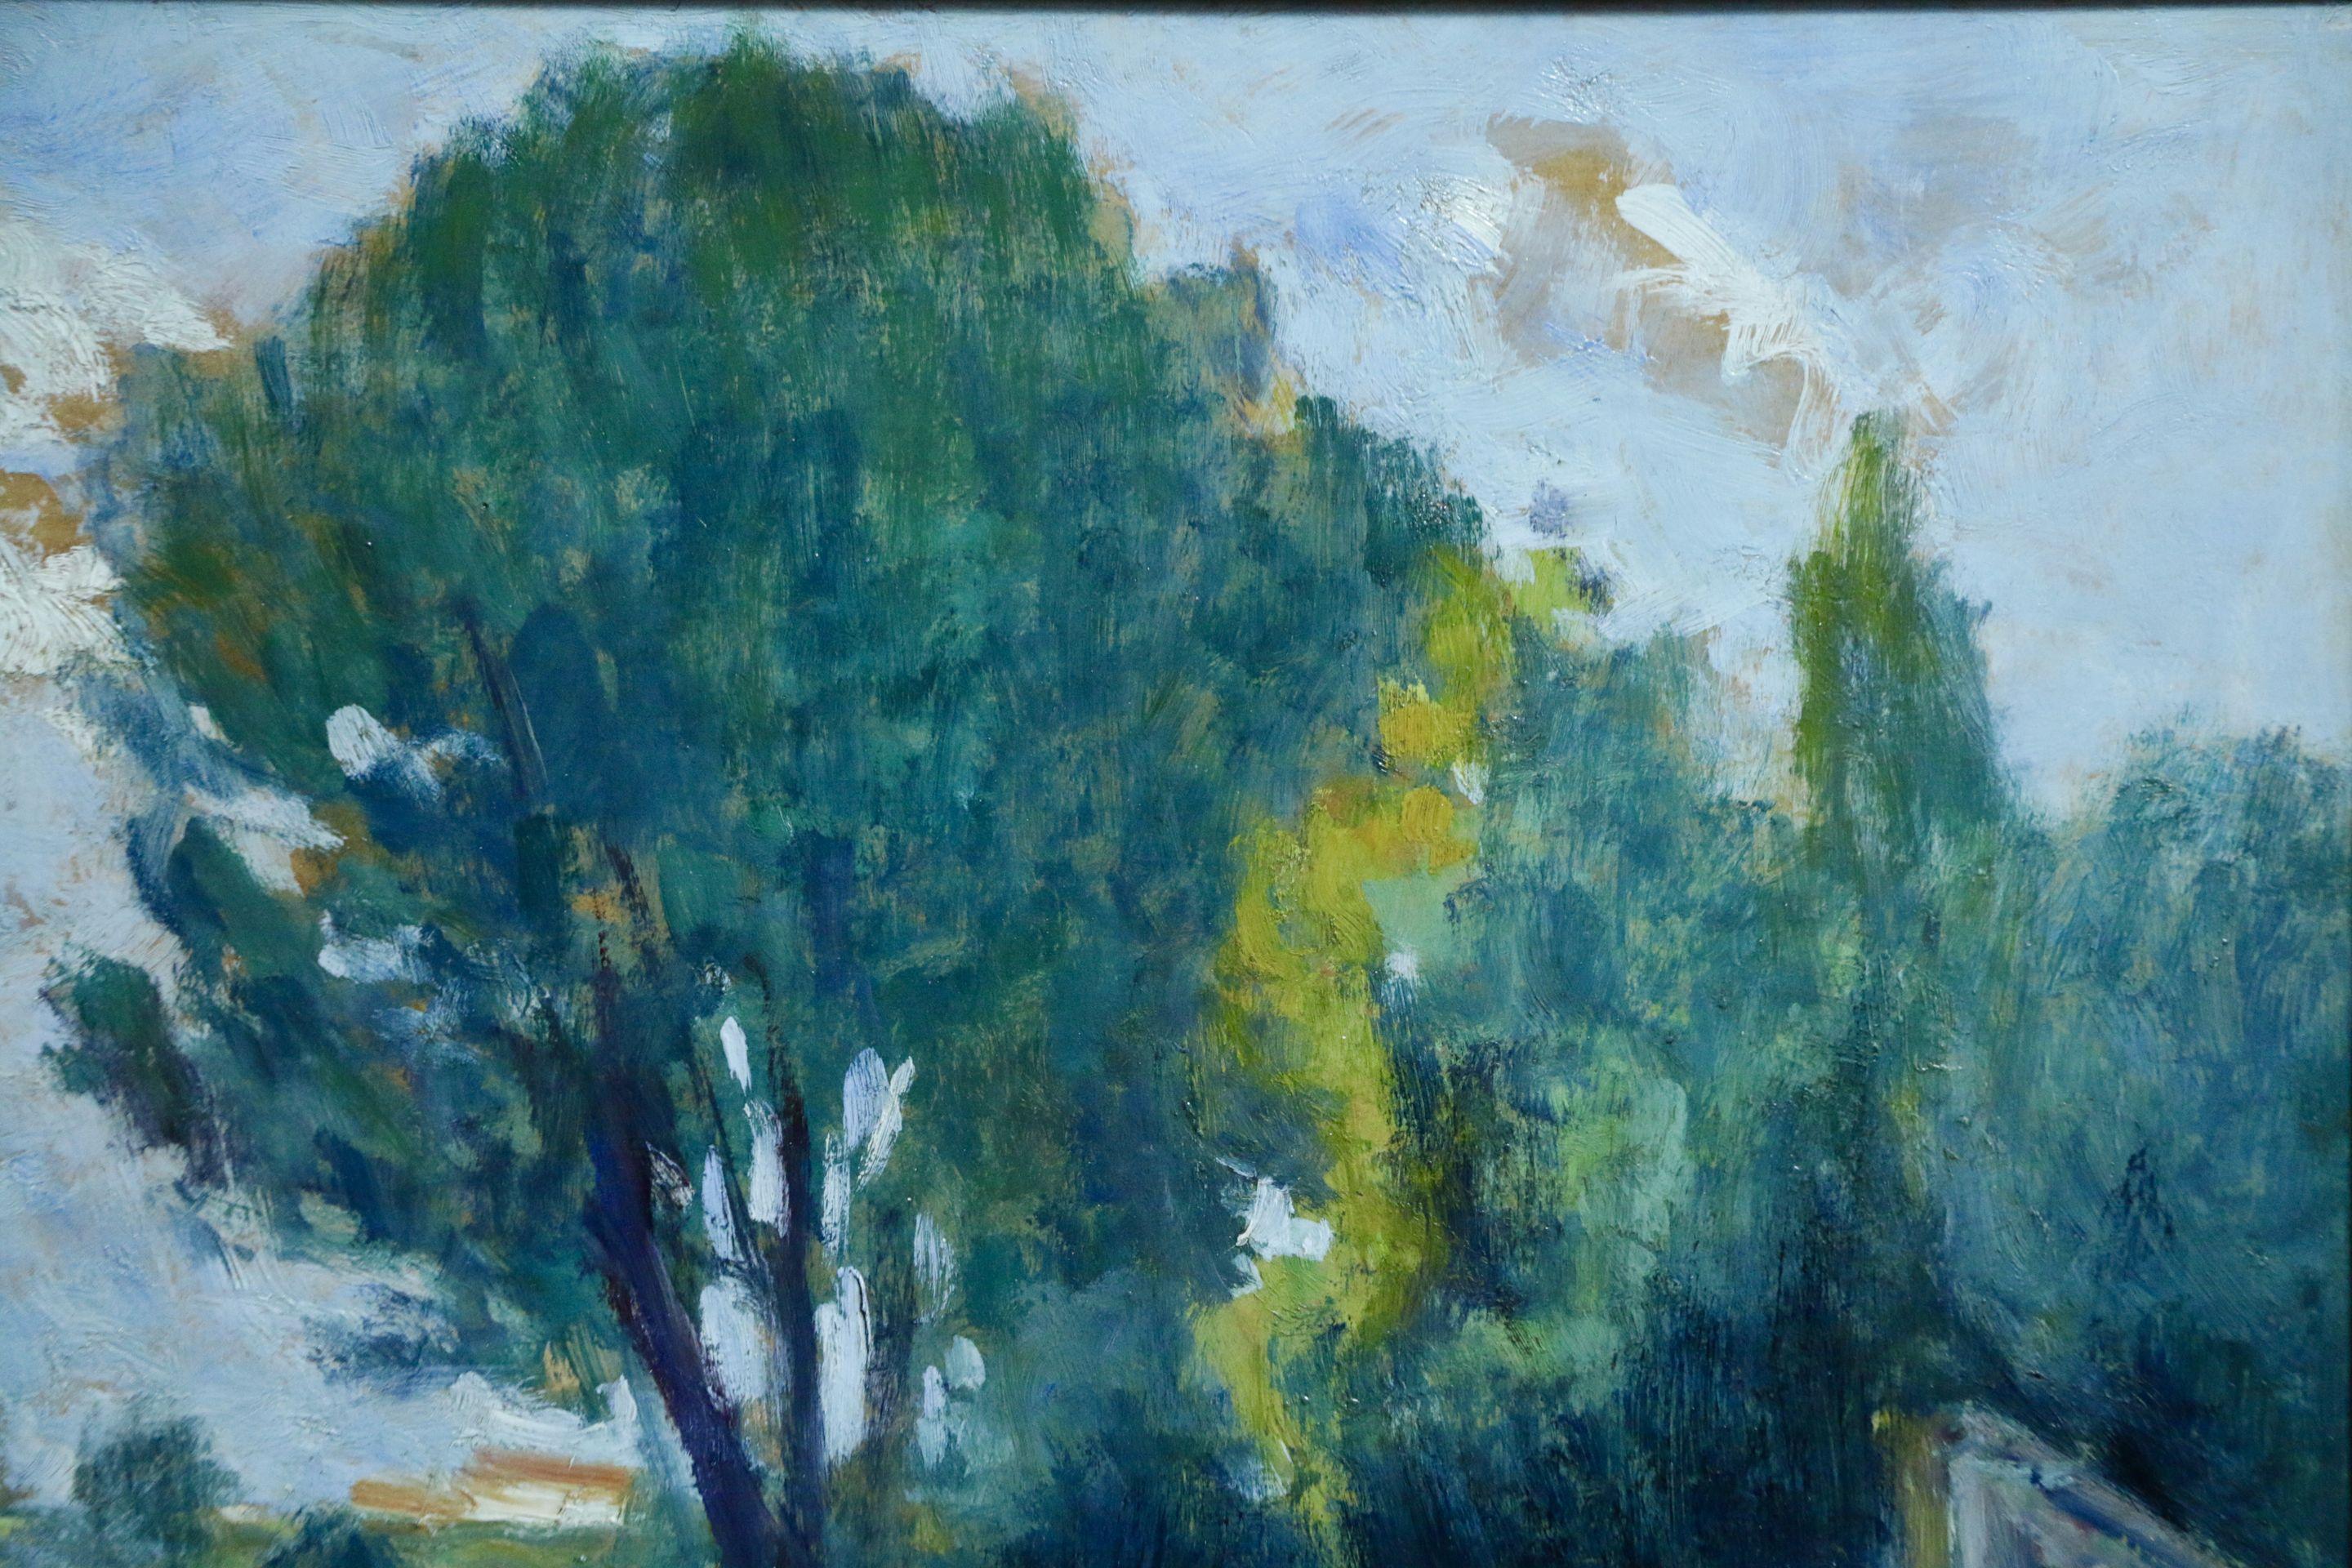 Bords de Seine - 19th Century Oil, Trees in Riverscape by Maximillien Luce - Blue Landscape Painting by Maximilien Luce